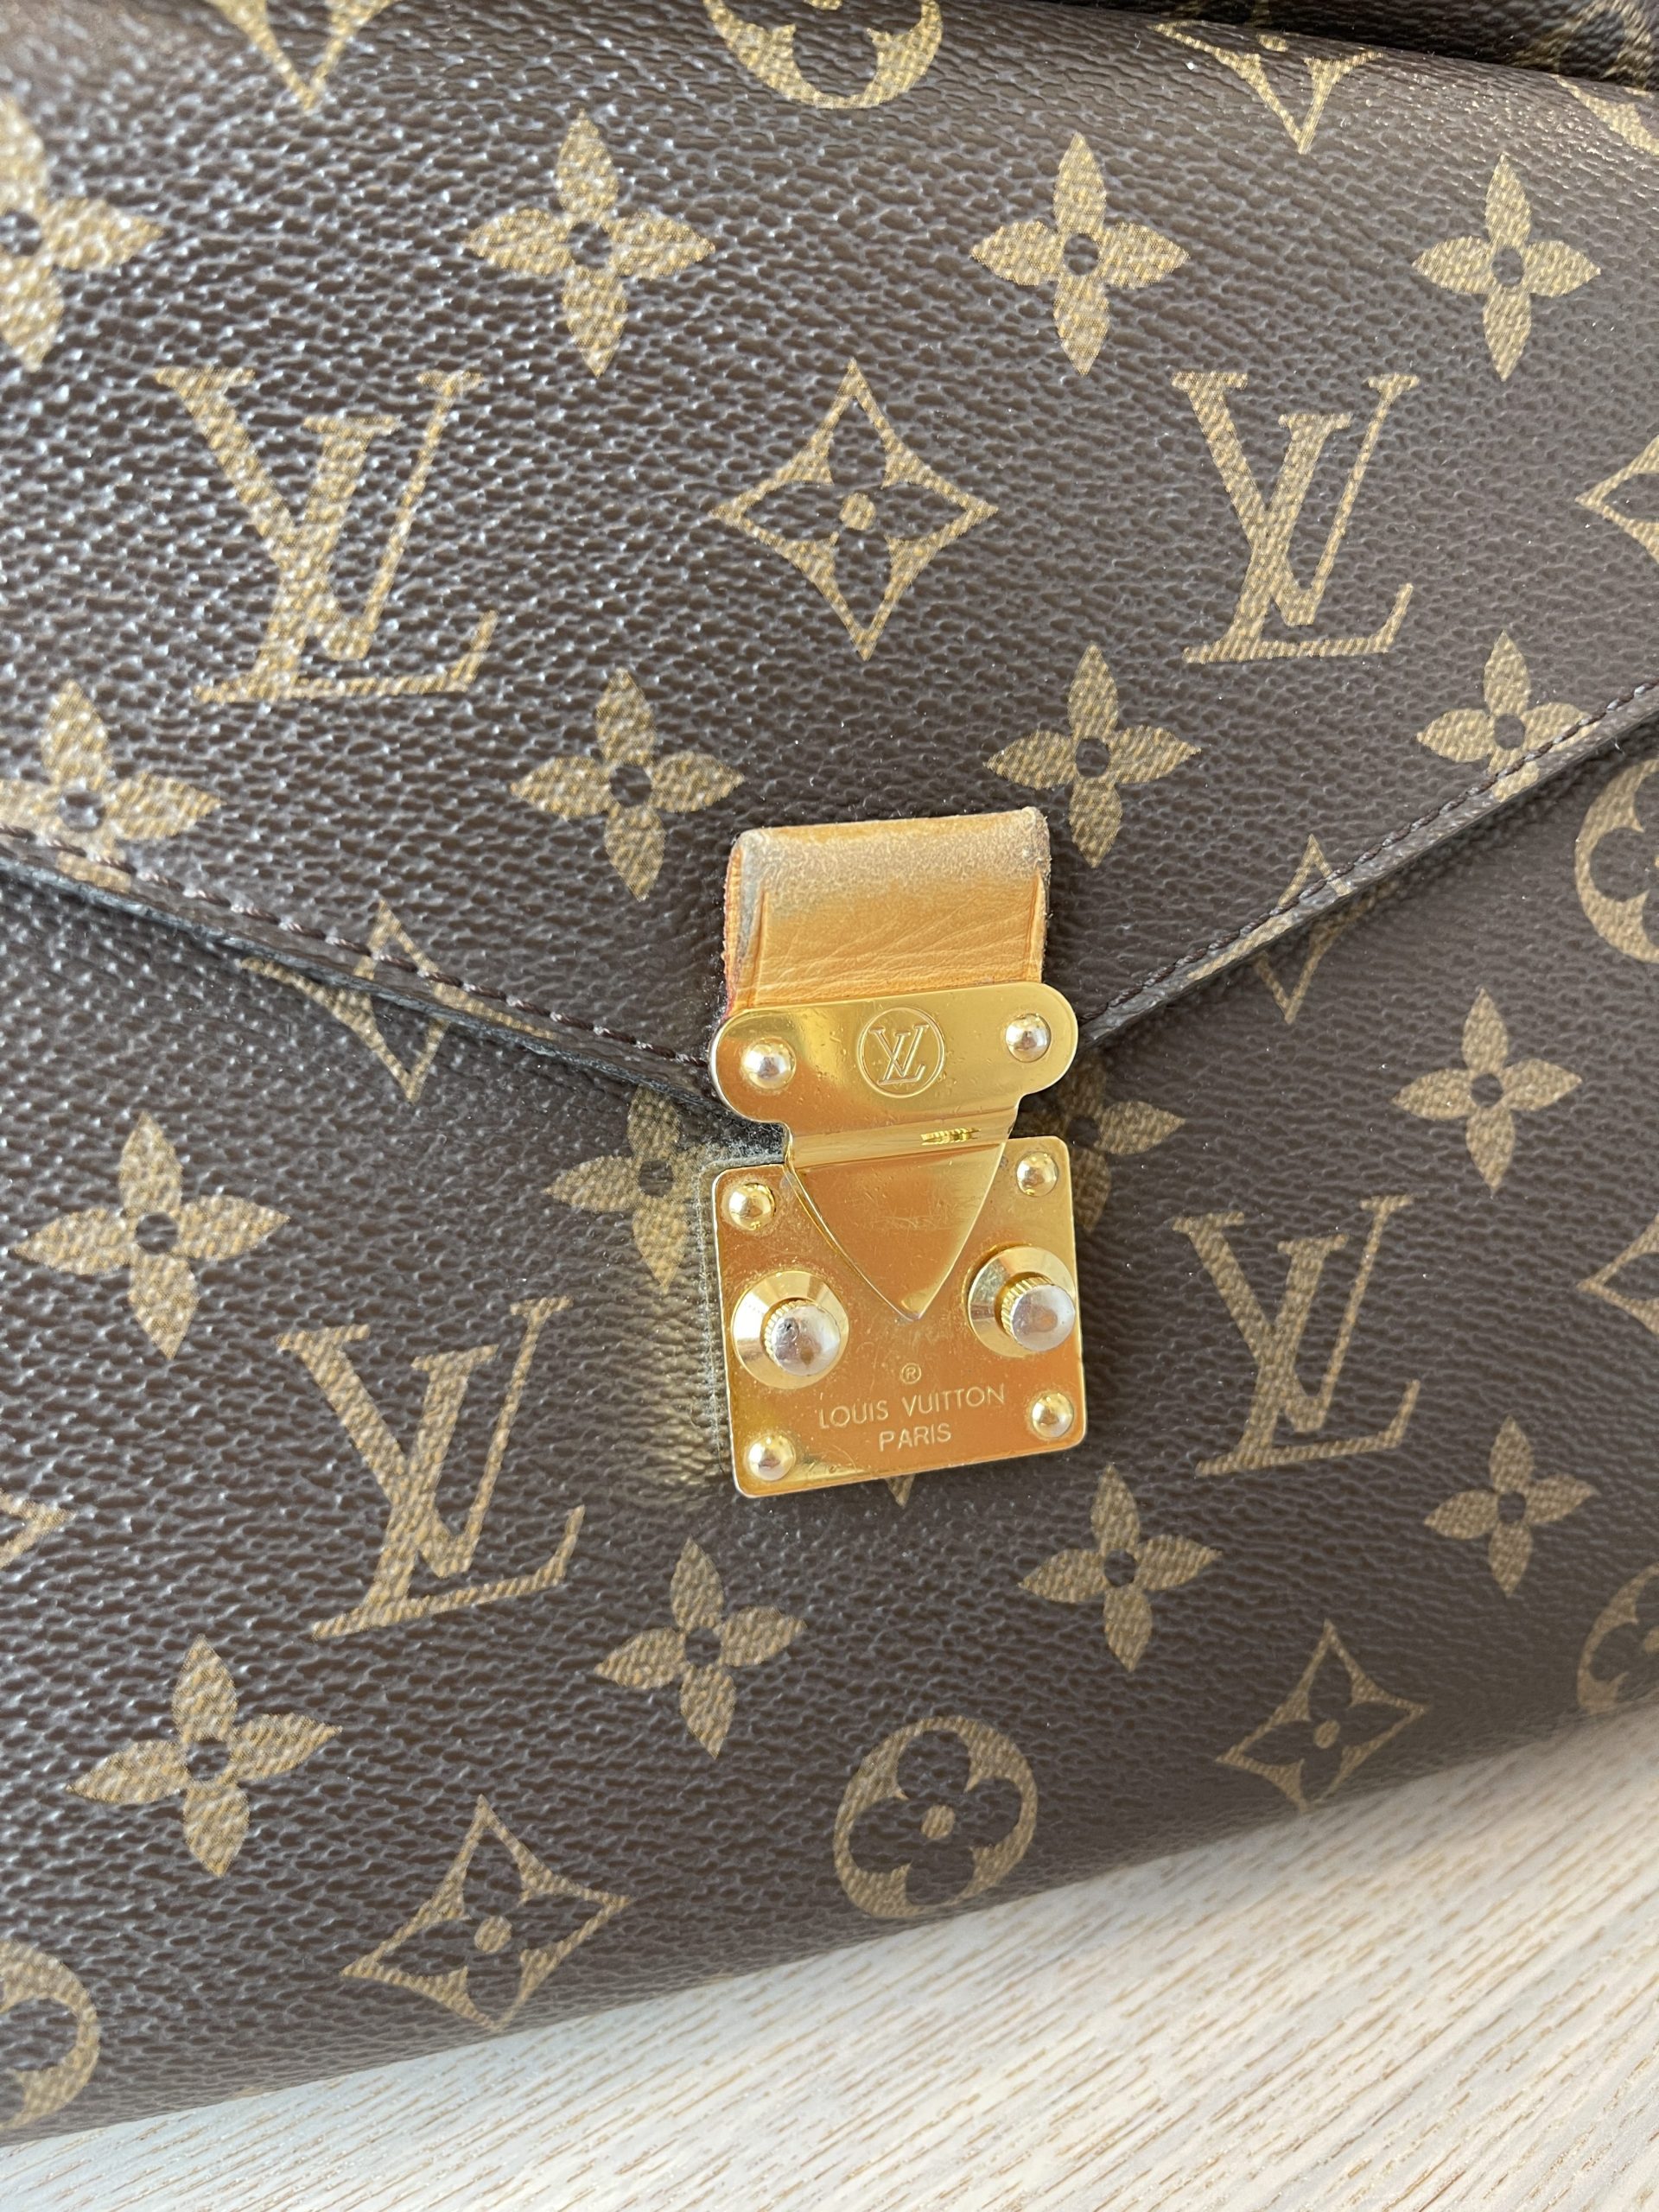 Unboxing Tas LV Asli  Louis Vuitton Pochette Metis Authentic